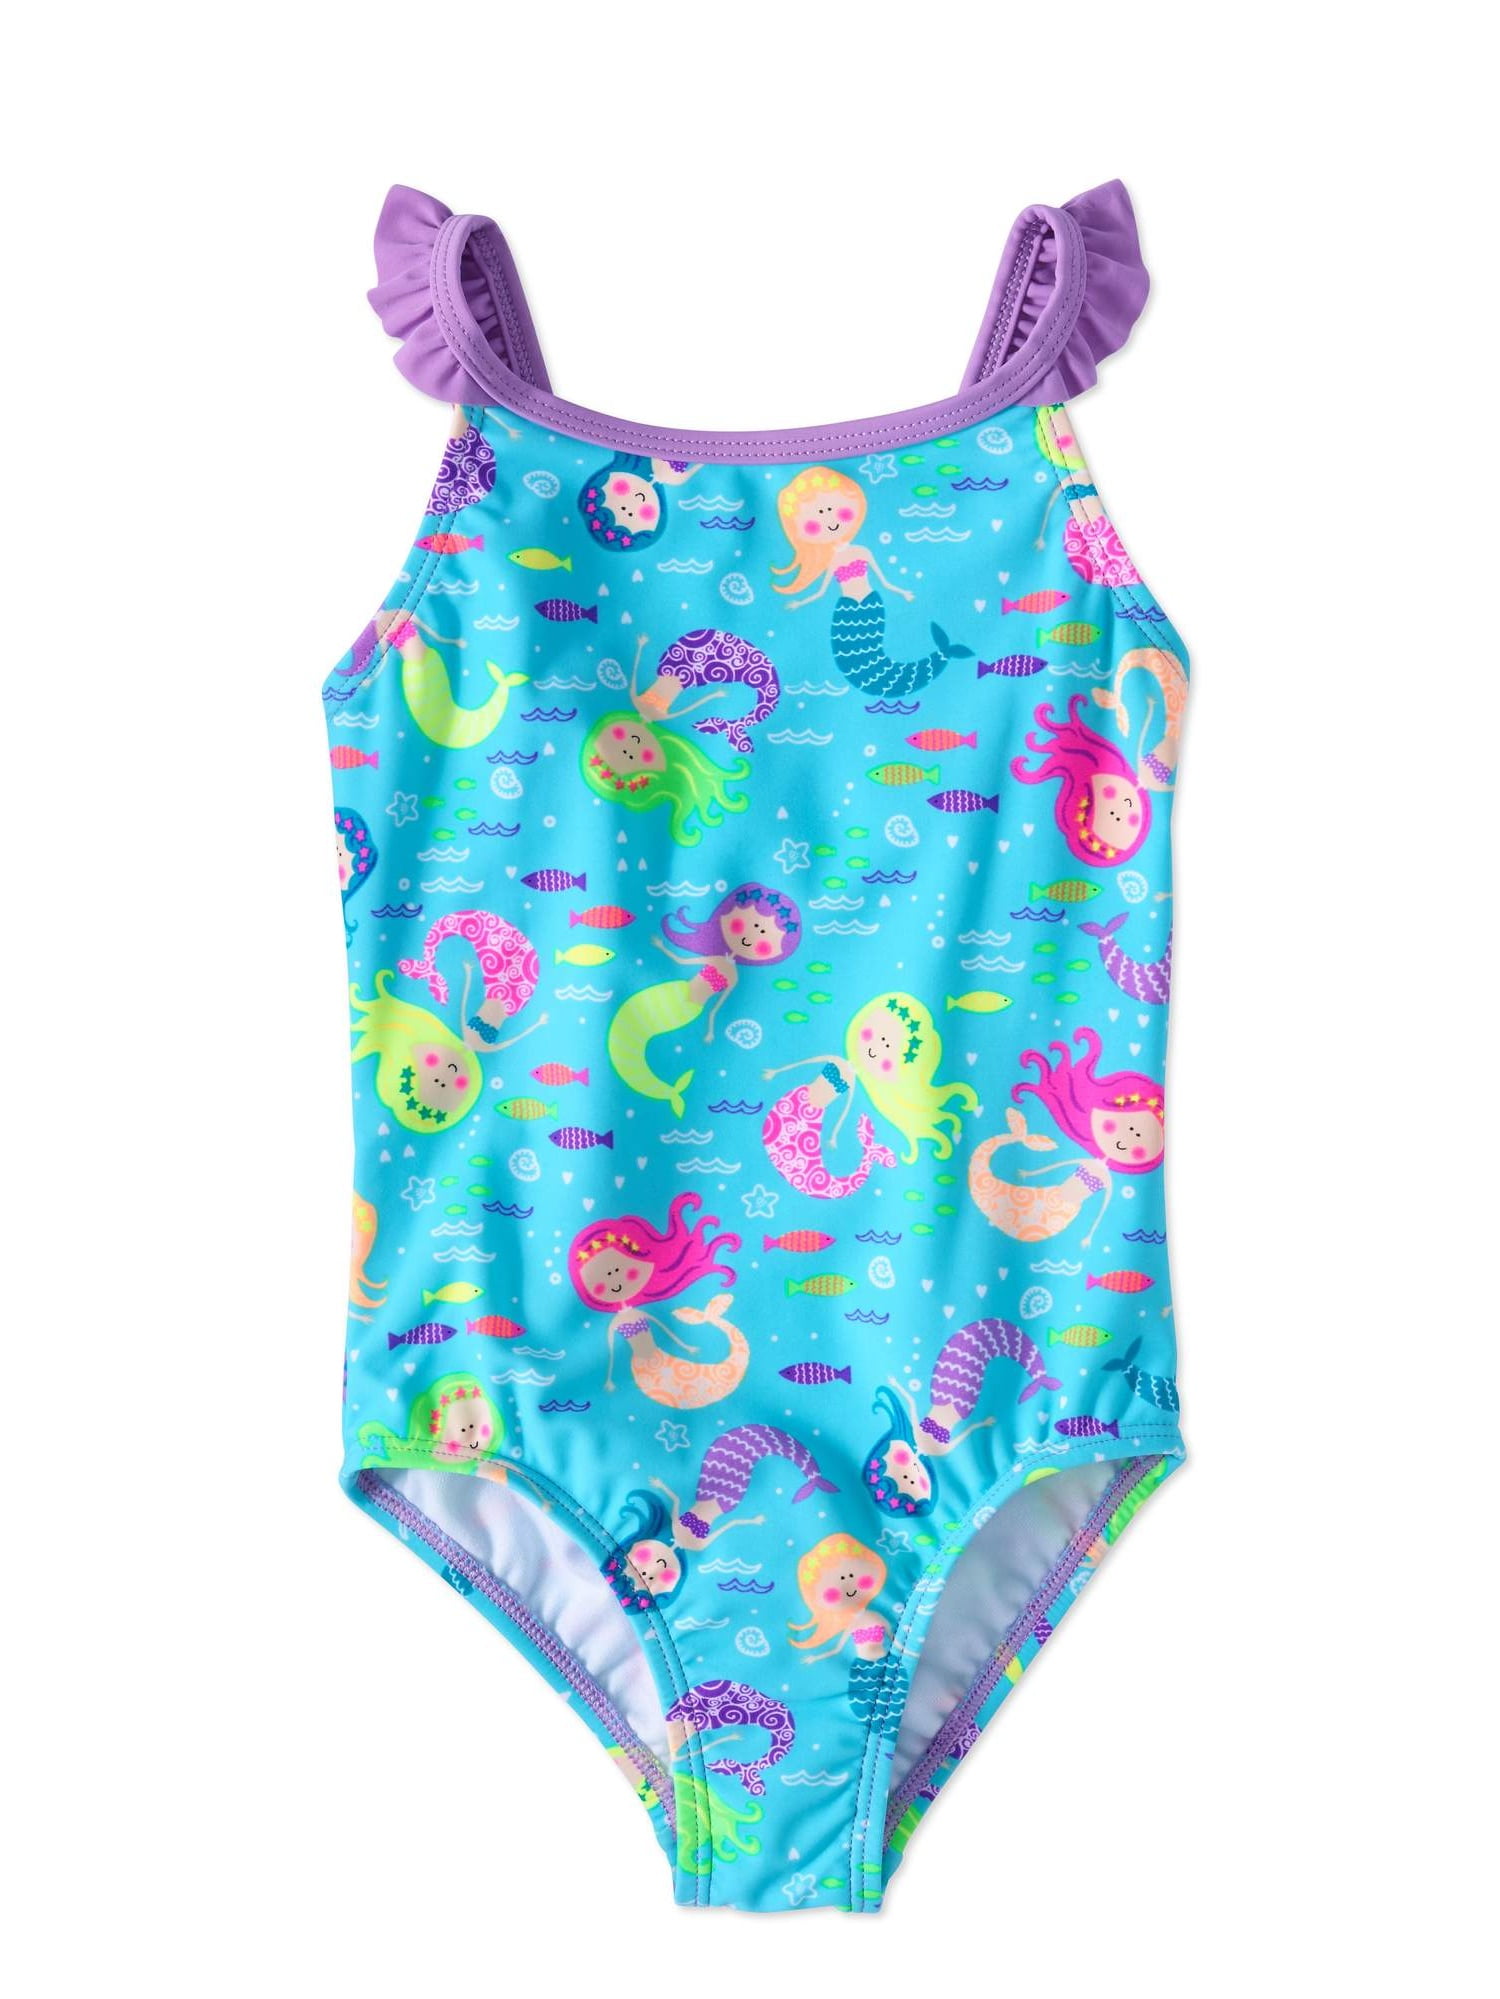 Little Girls' 1 Piece Swingly Swimsuit - Walmart.com